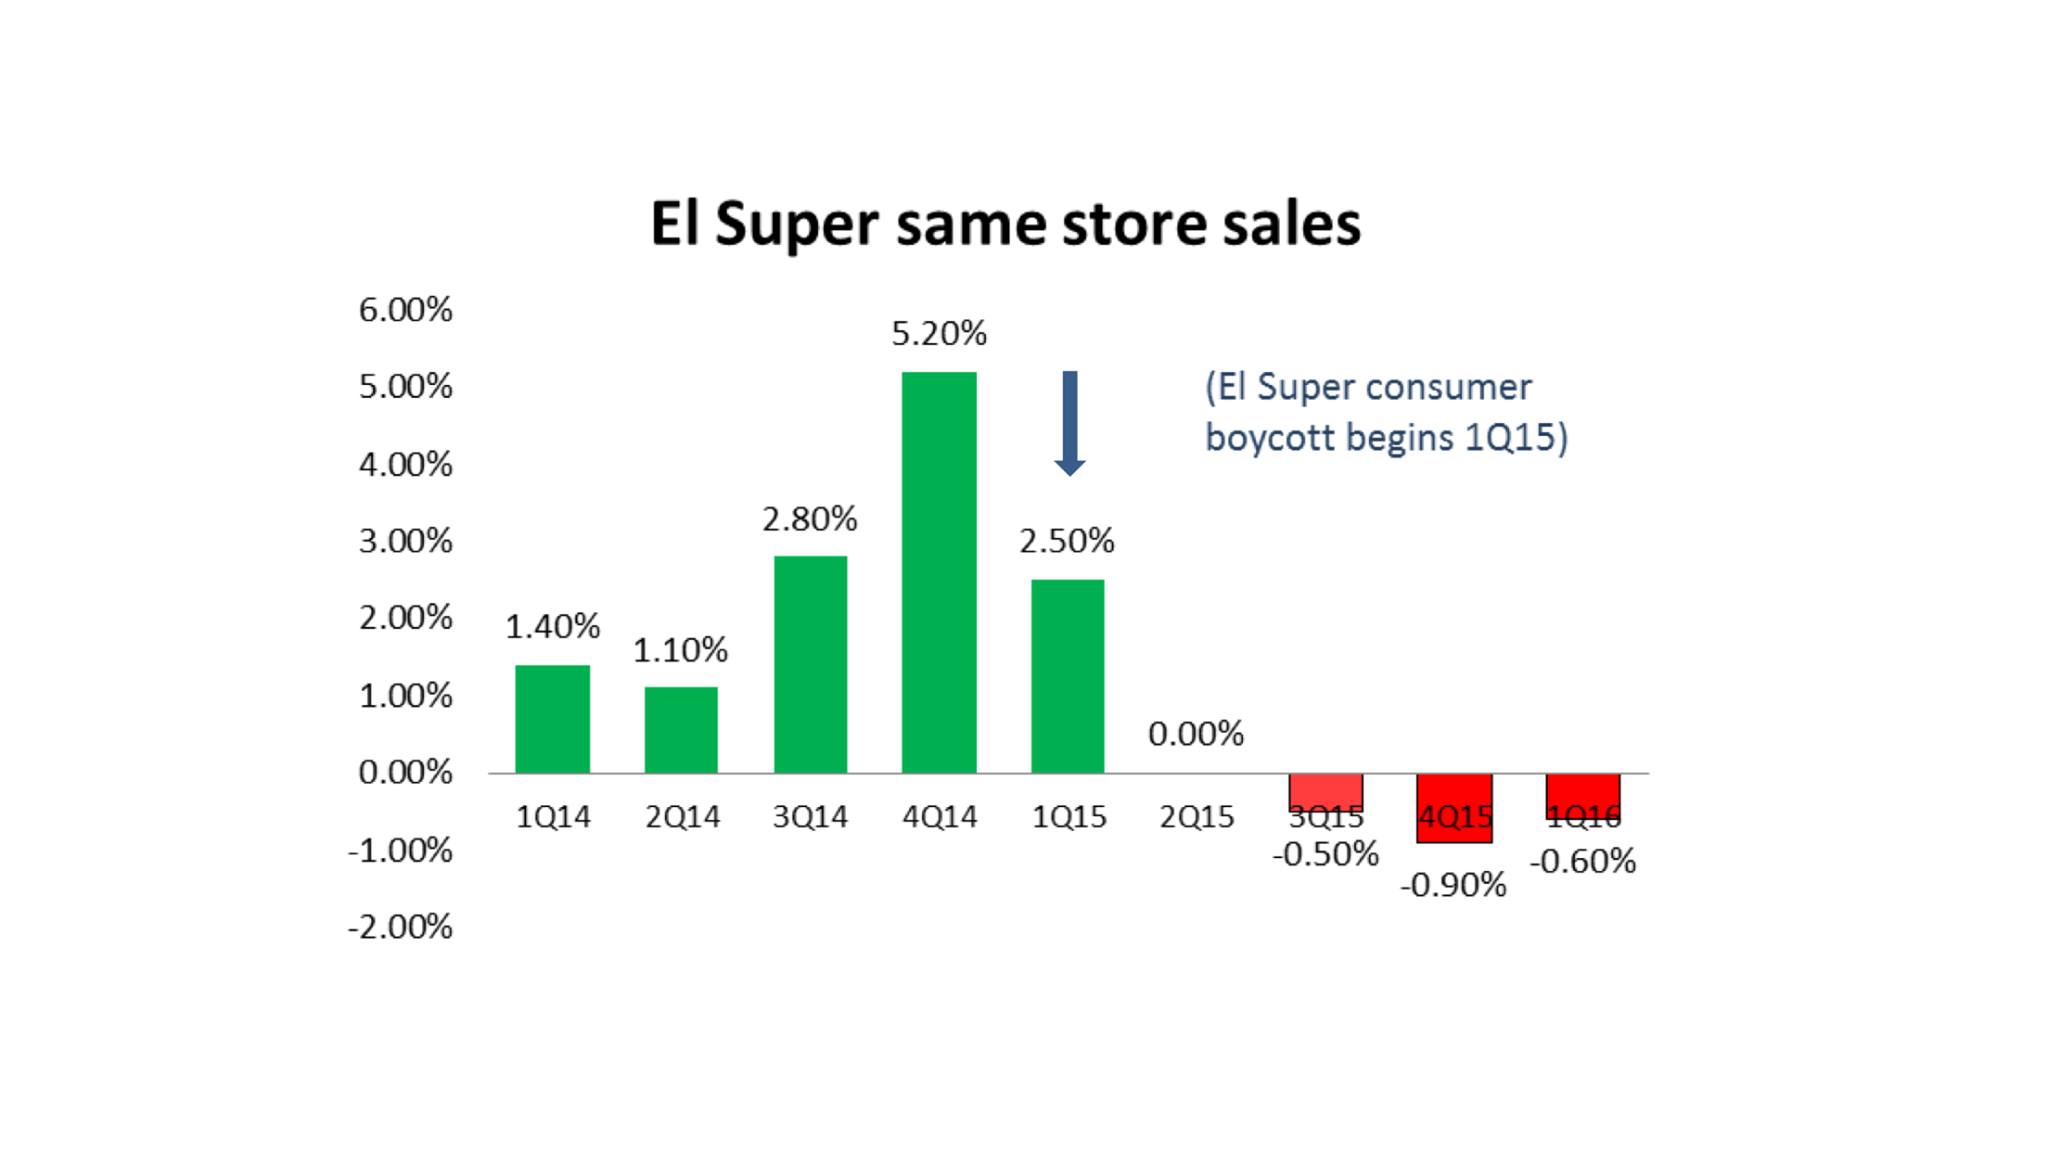 SSS Decline at El Super